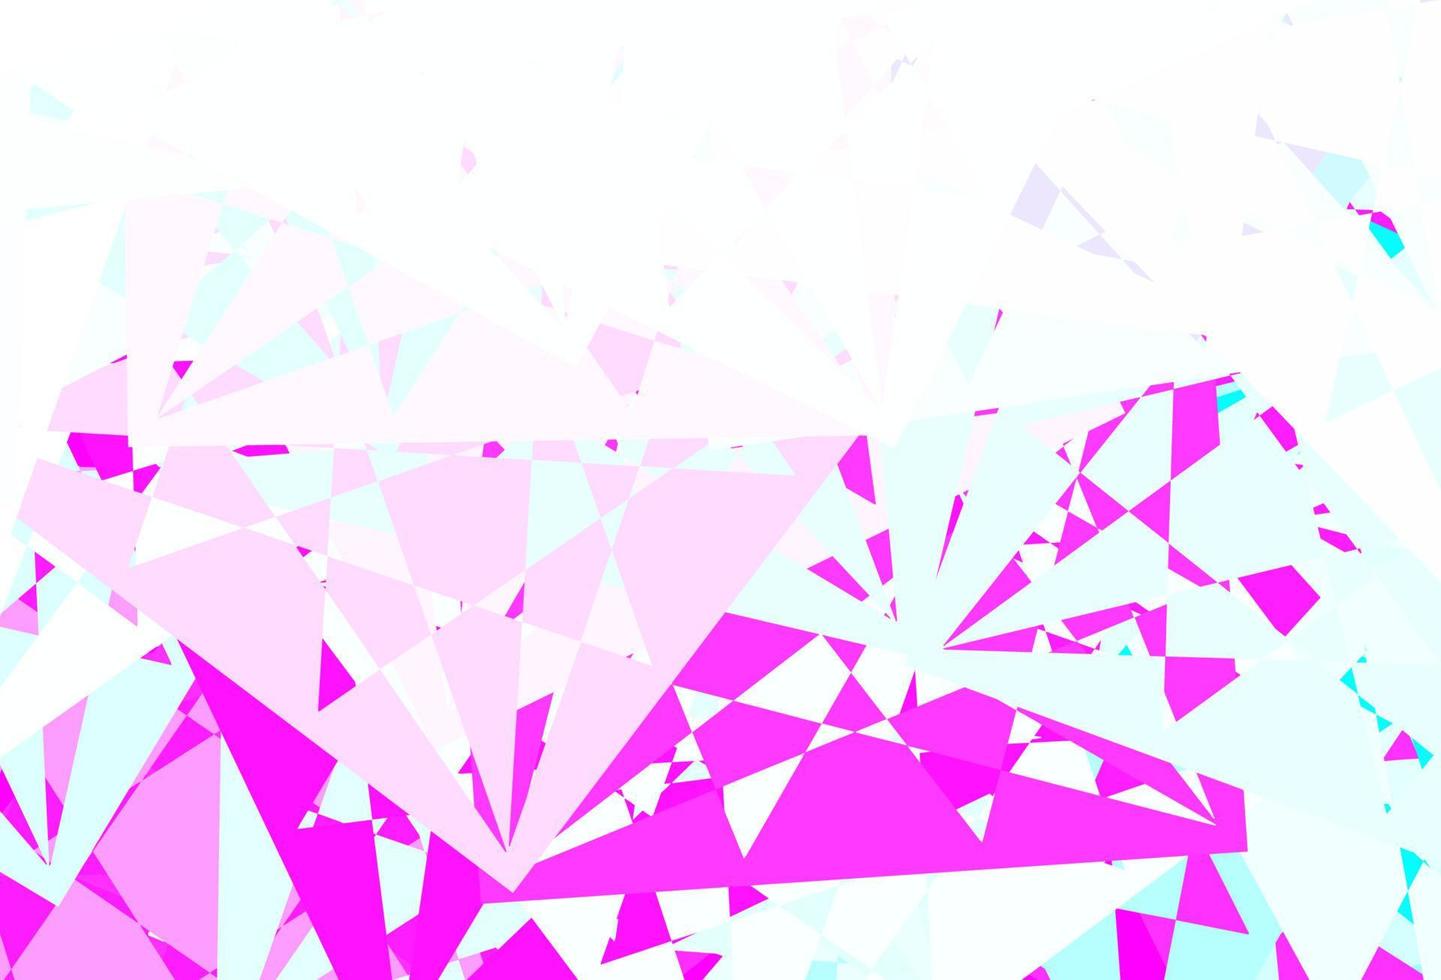 textura de vector de color rosa oscuro, azul con triángulos al azar.